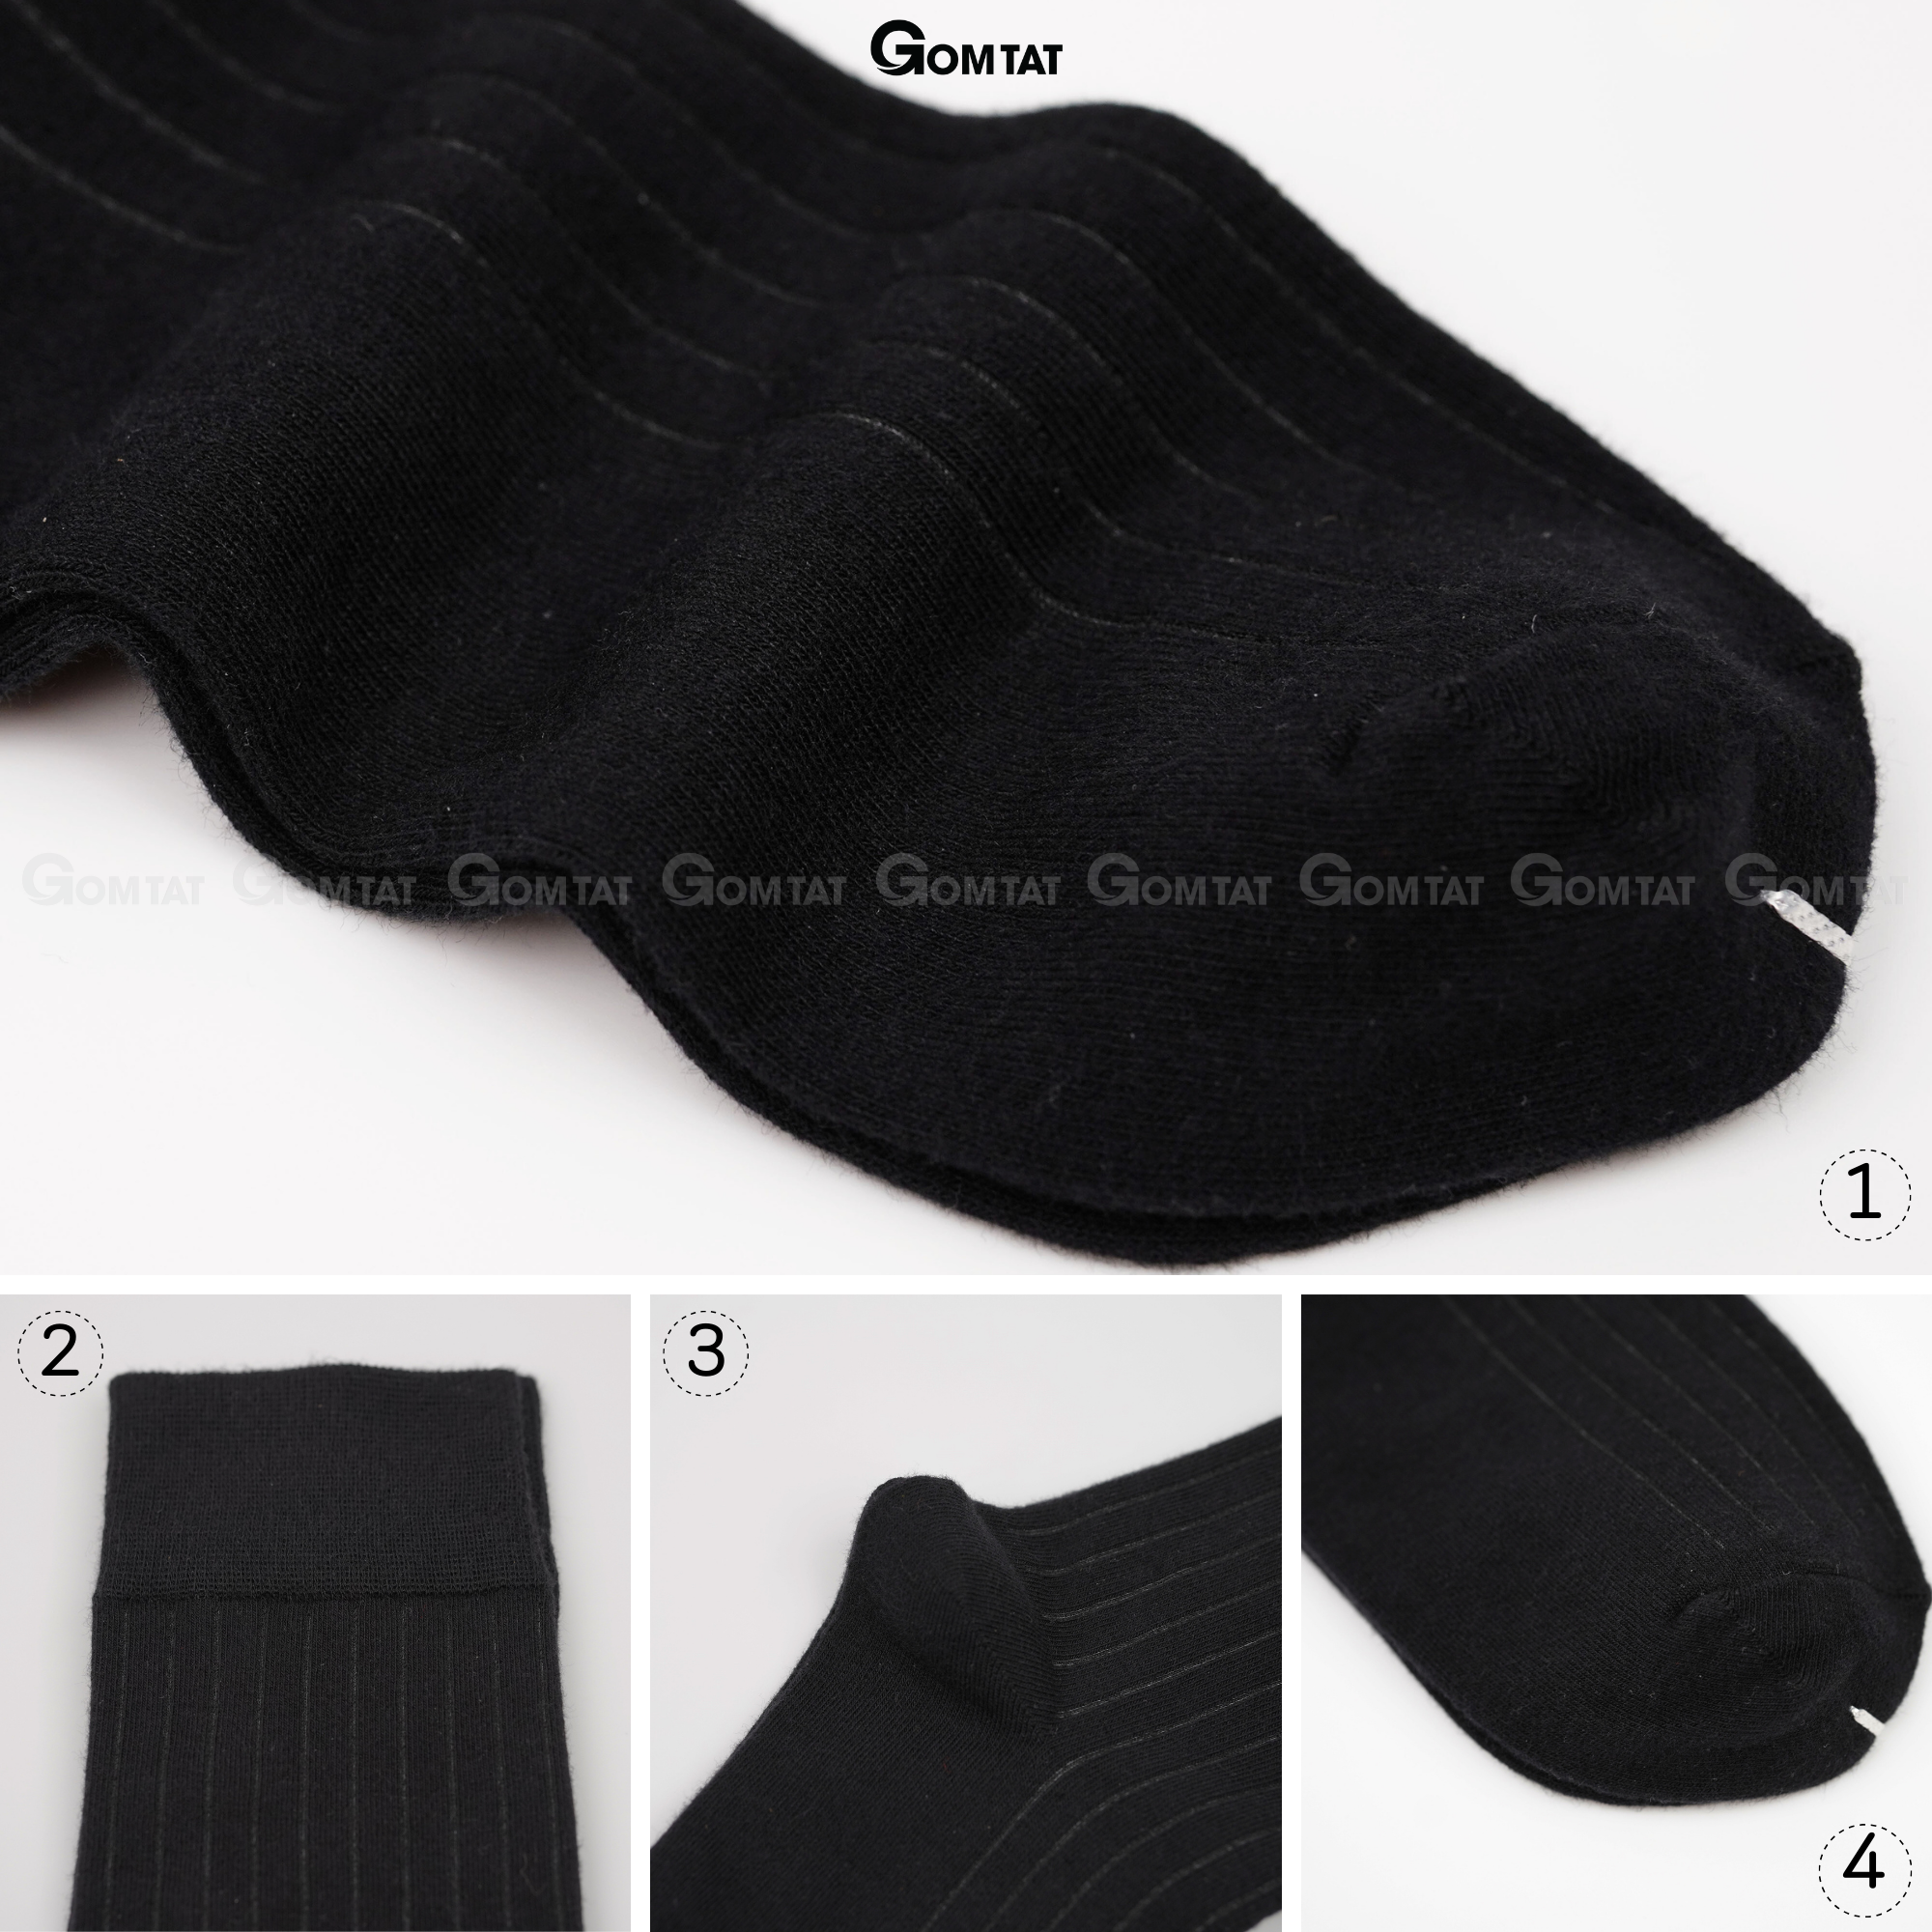 Hộp 5 đôi tất vớ nam đi giày tây công sở cổ cao GOMTAT mẫu MIX01, chất liệu cotton cao cấp thoáng khí - GOM-MIX01-CB5